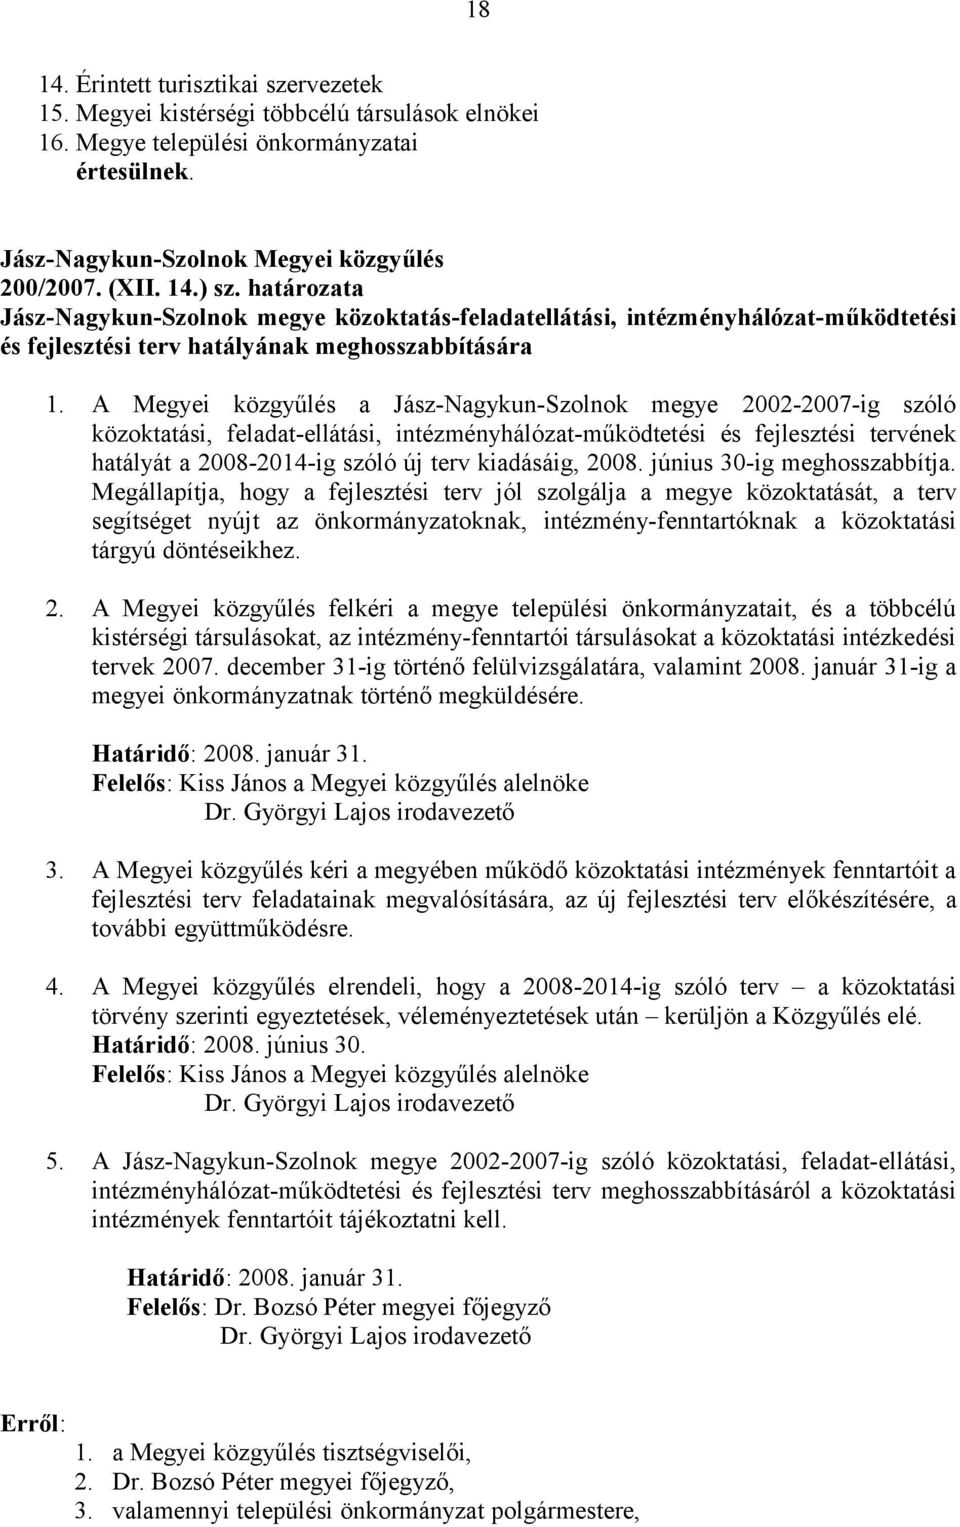 A Megyei közgyűlés a Jász-Nagykun-Szolnok megye 2002-2007-ig szóló közoktatási, feladat-ellátási, intézményhálózat-működtetési és fejlesztési tervének hatályát a 2008-2014-ig szóló új terv kiadásáig,